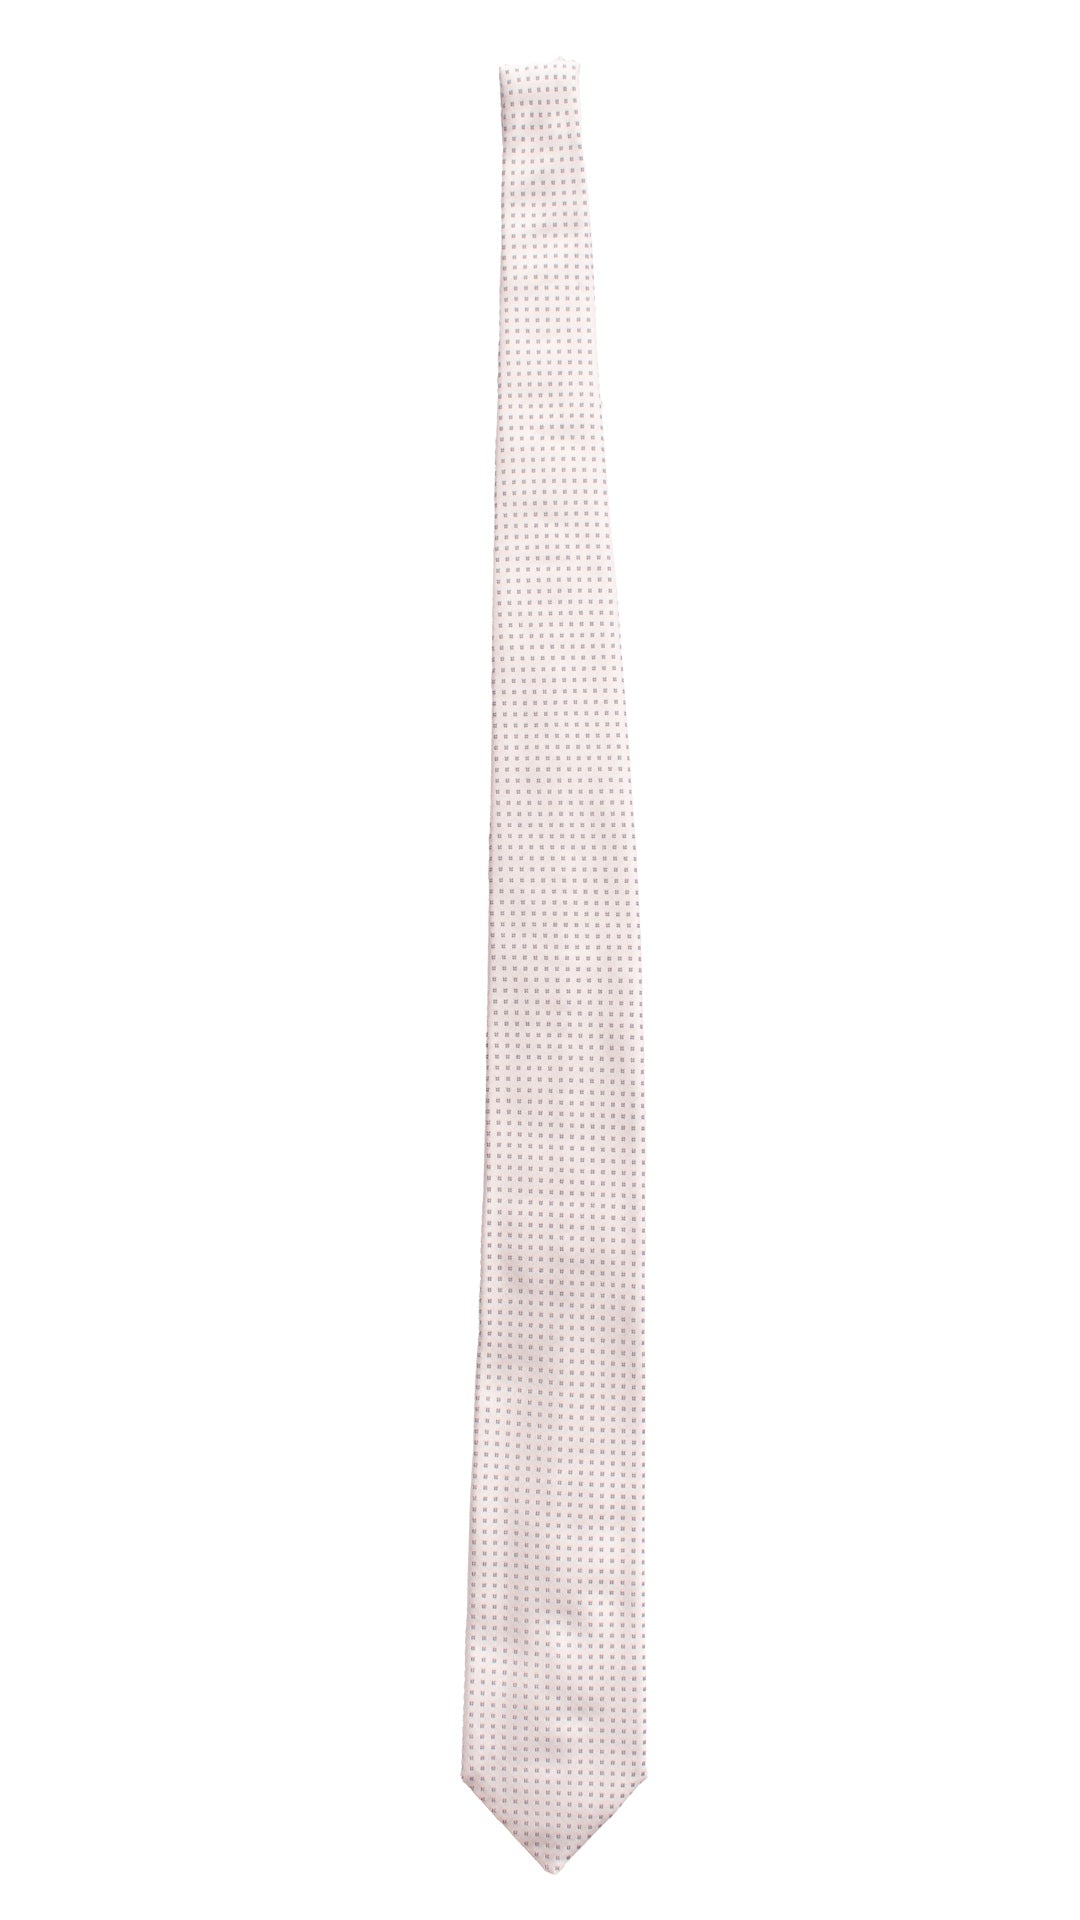 Cravatta da Cerimonia di Seta Bianco Perla Fantasia Blu CY6611 Made in Italy Graffeo Cravatte intera